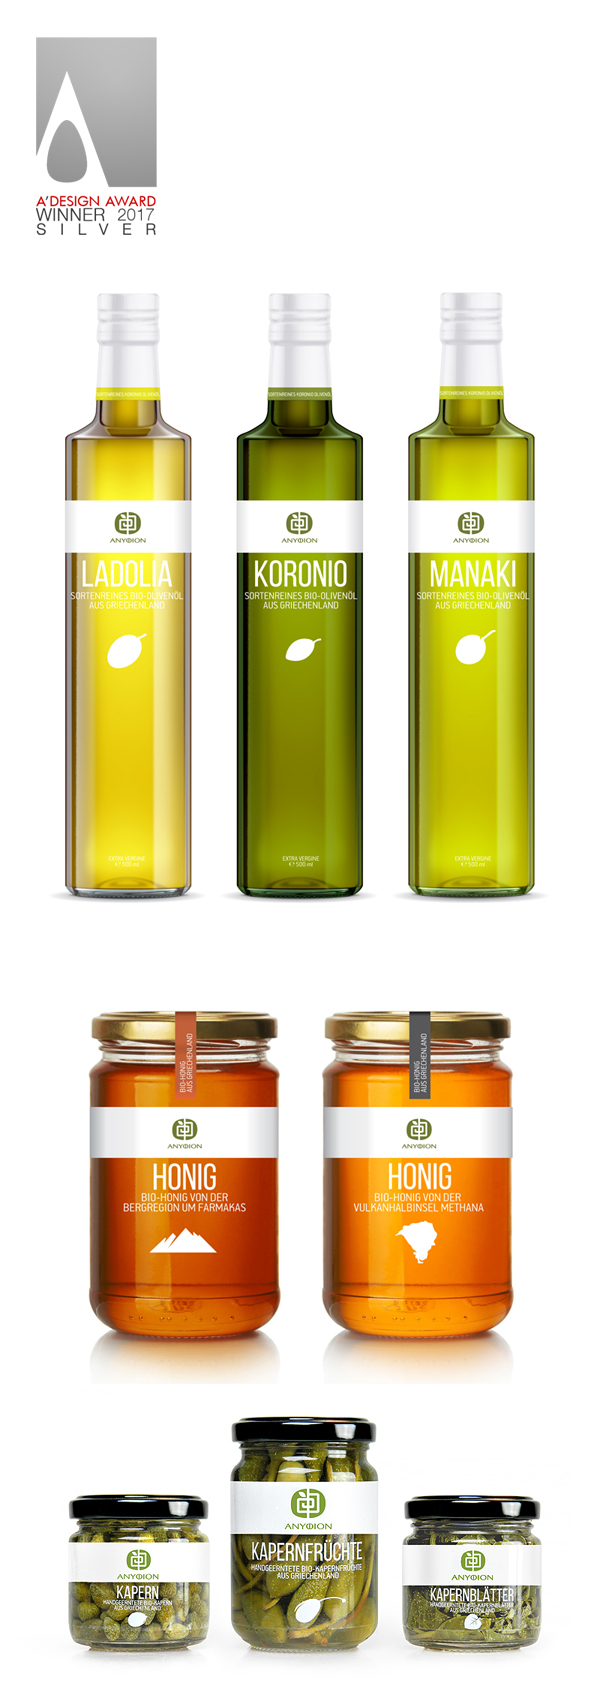 Packaging caper packaging olive oil packaging Honey packaging simple minimal clean anyfion